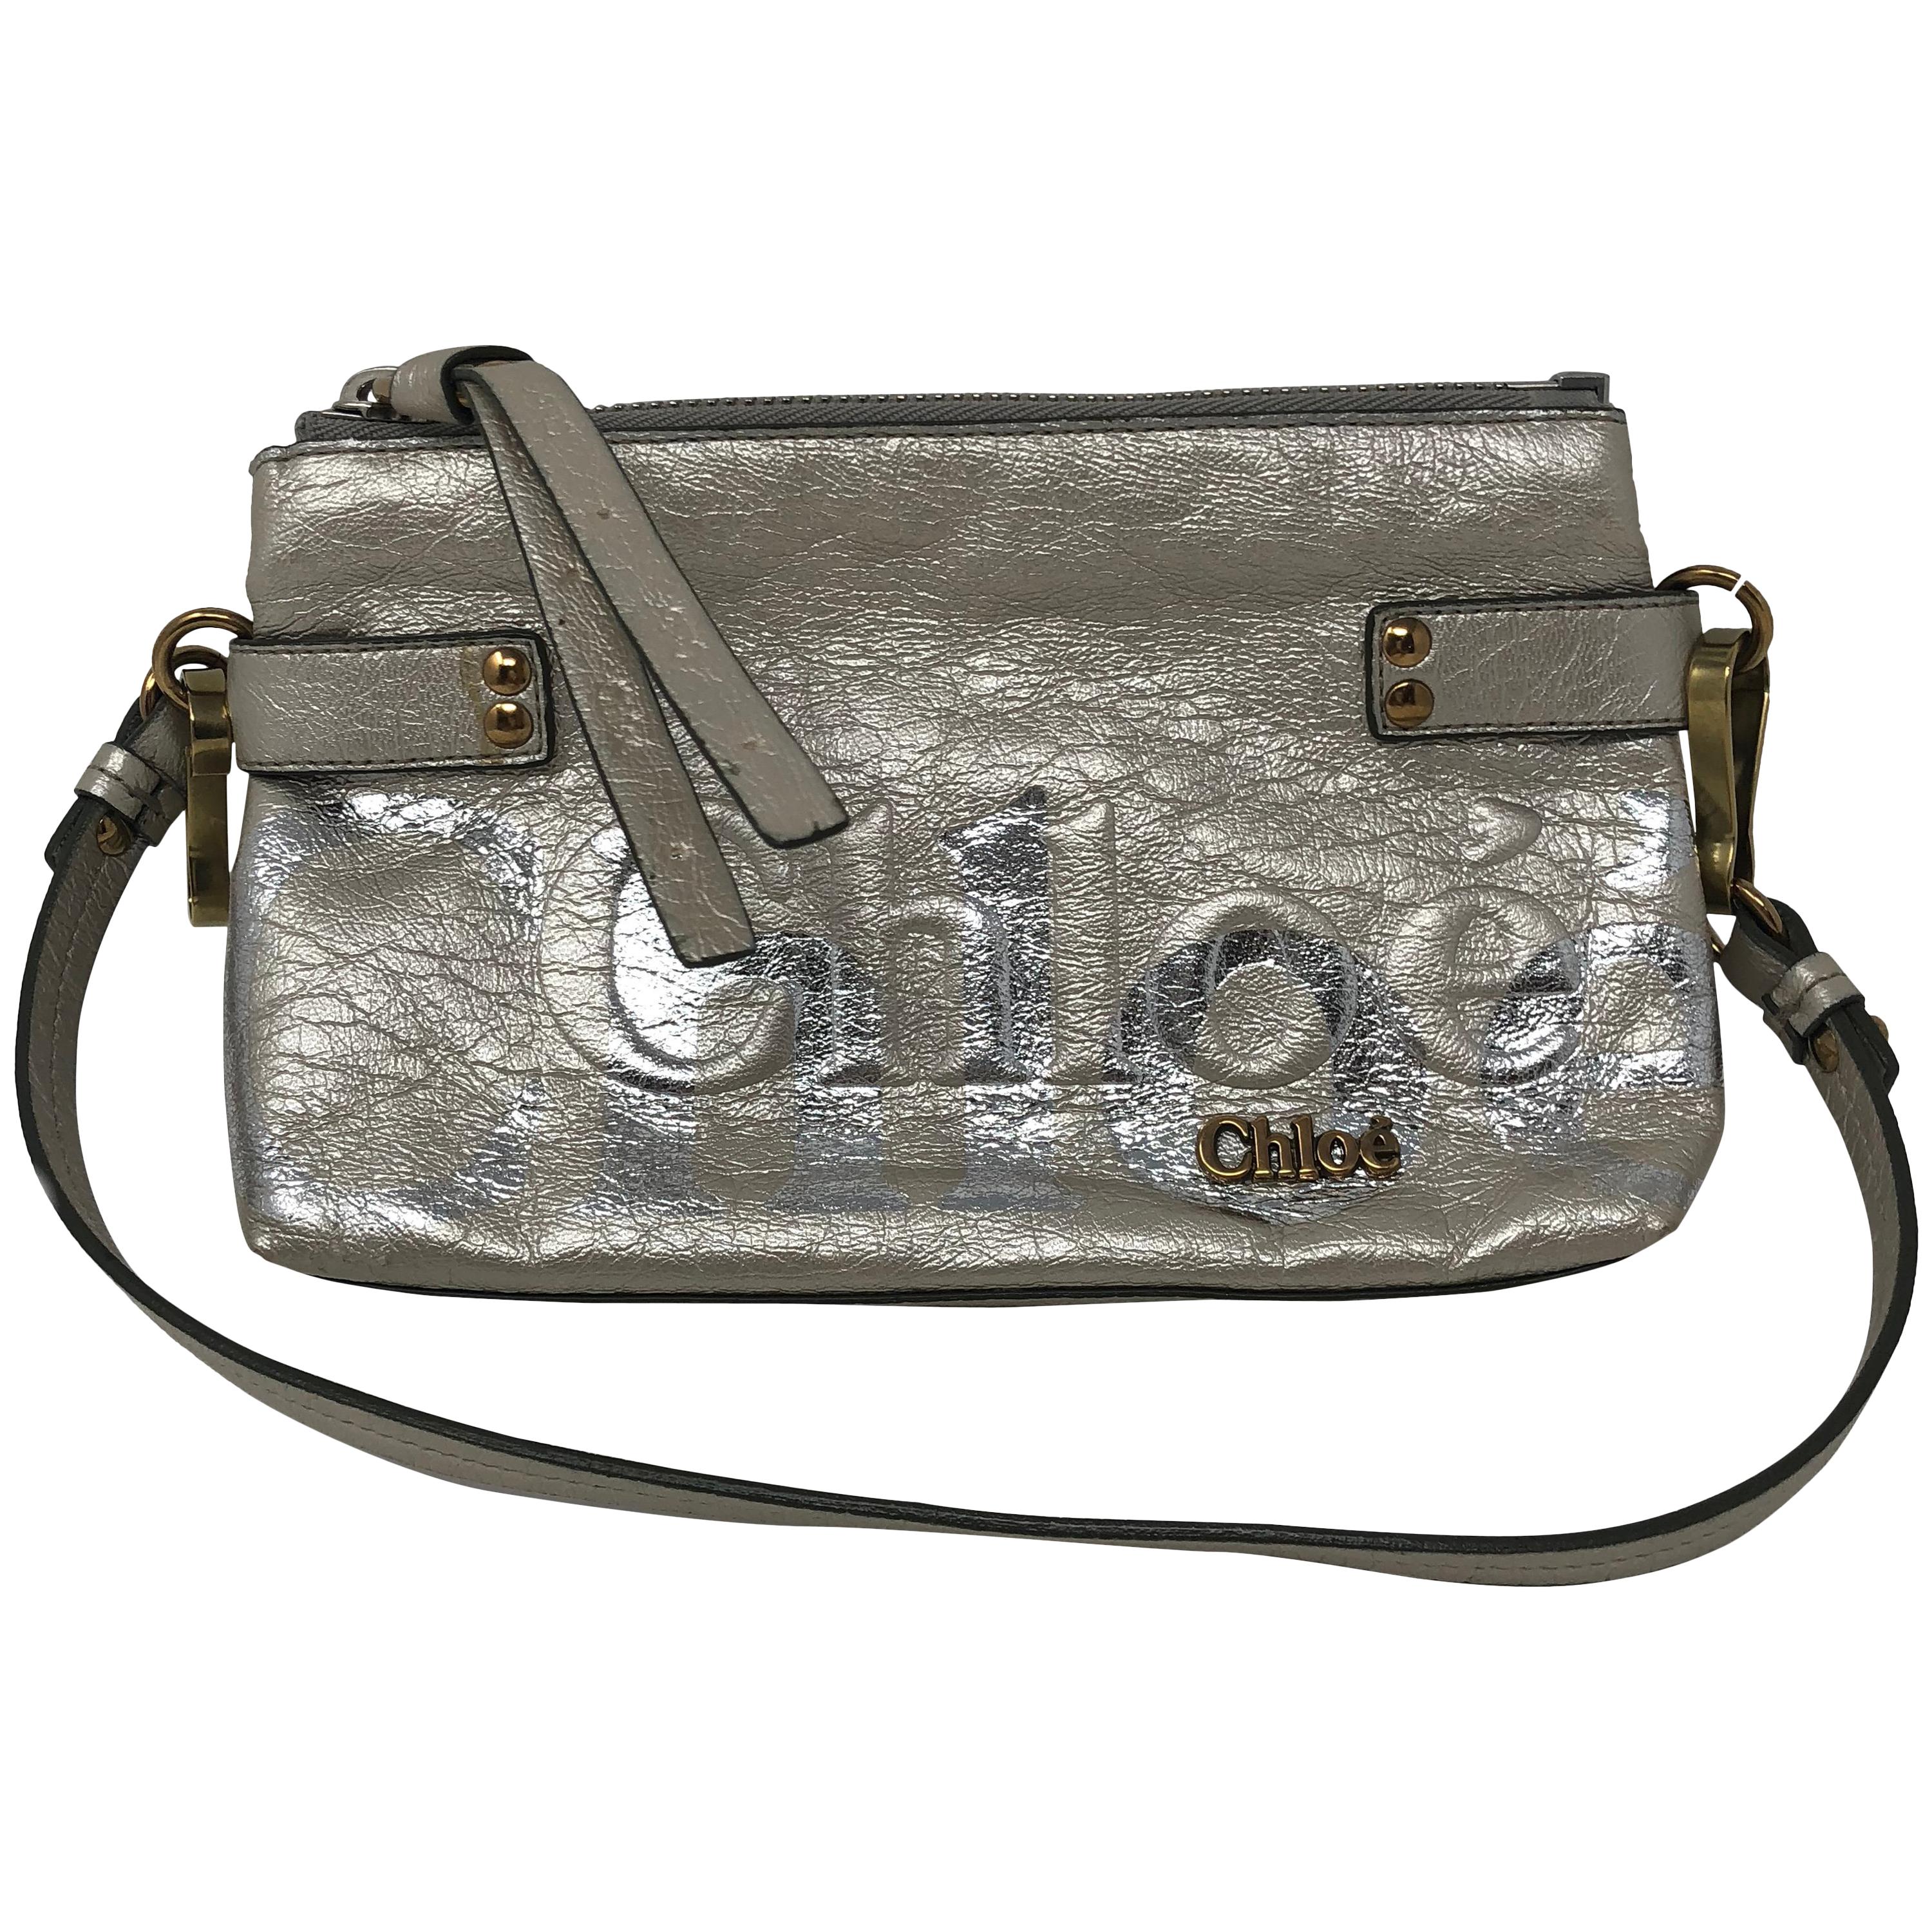 Chloe Crossbody Silver Leather Bag